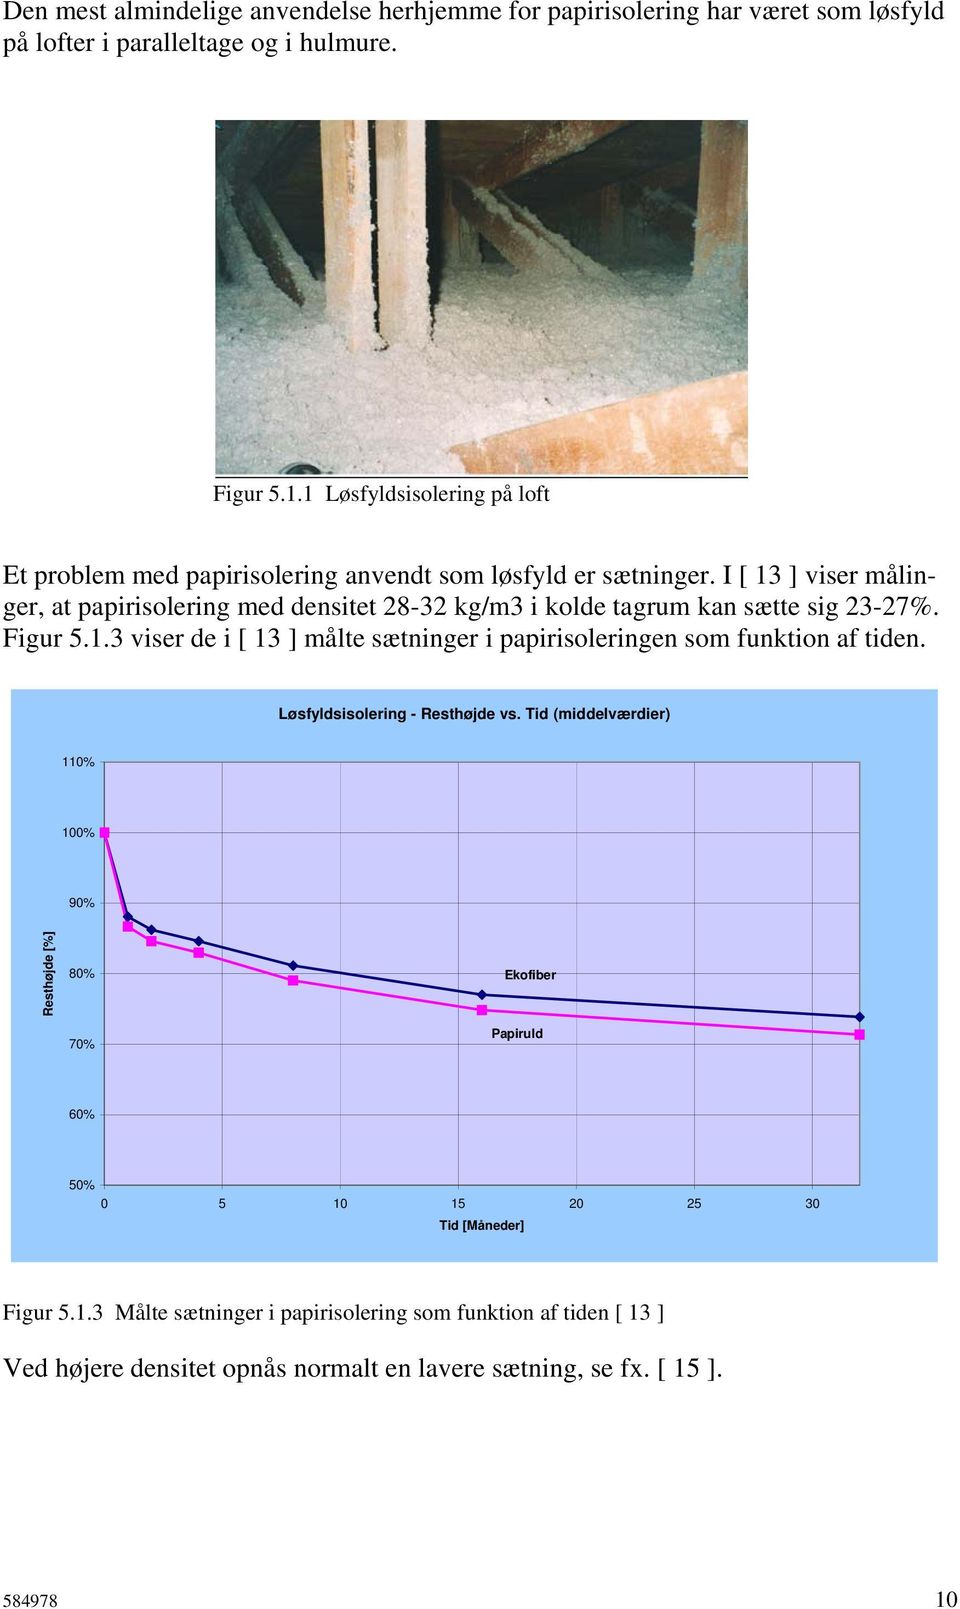 I [ 13 ] viser målinger, at papirisolering med densitet 28-32 kg/m3 i kolde tagrum kan sætte sig 23-27%. Figur 5.1.3 viser de i [ 13 ] målte sætninger i papirisoleringen som funktion af tiden.